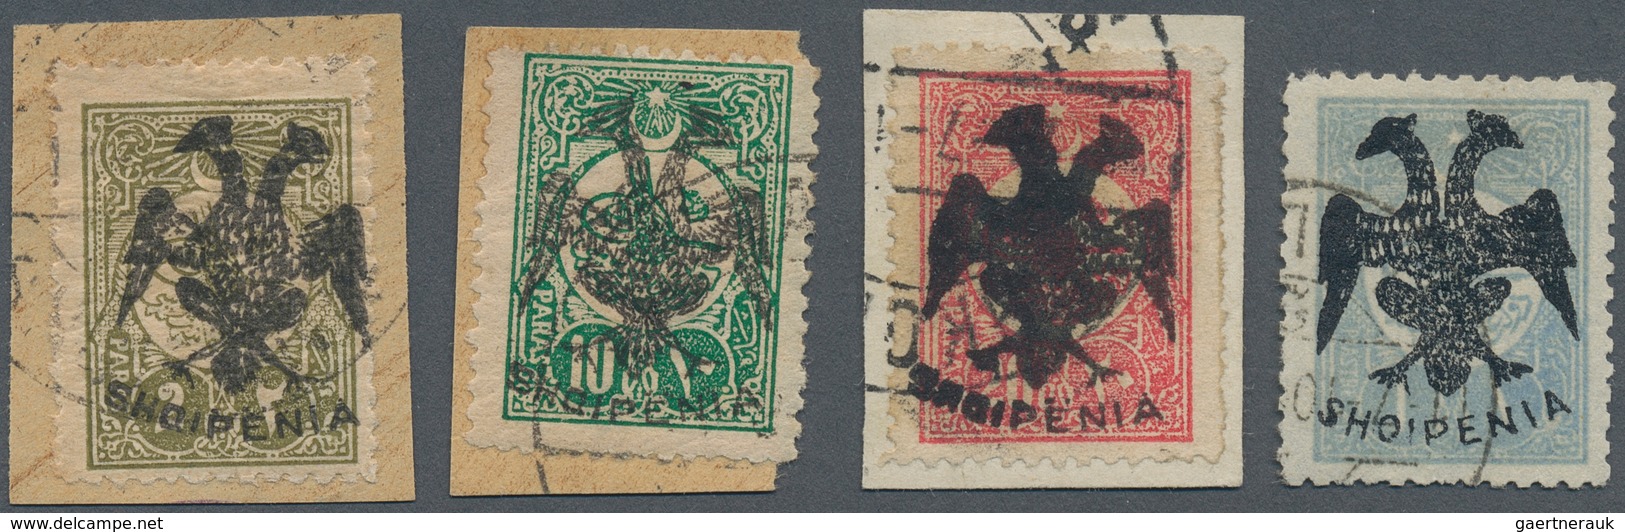 13314A Albanien: 1913, Doppeladler-Aufdruck "SHQIPENIA" Auf 2 Pa Oliv, 10 Pa Blaugrün, 20 Pa Rosa Und 1 Pia - Albanien